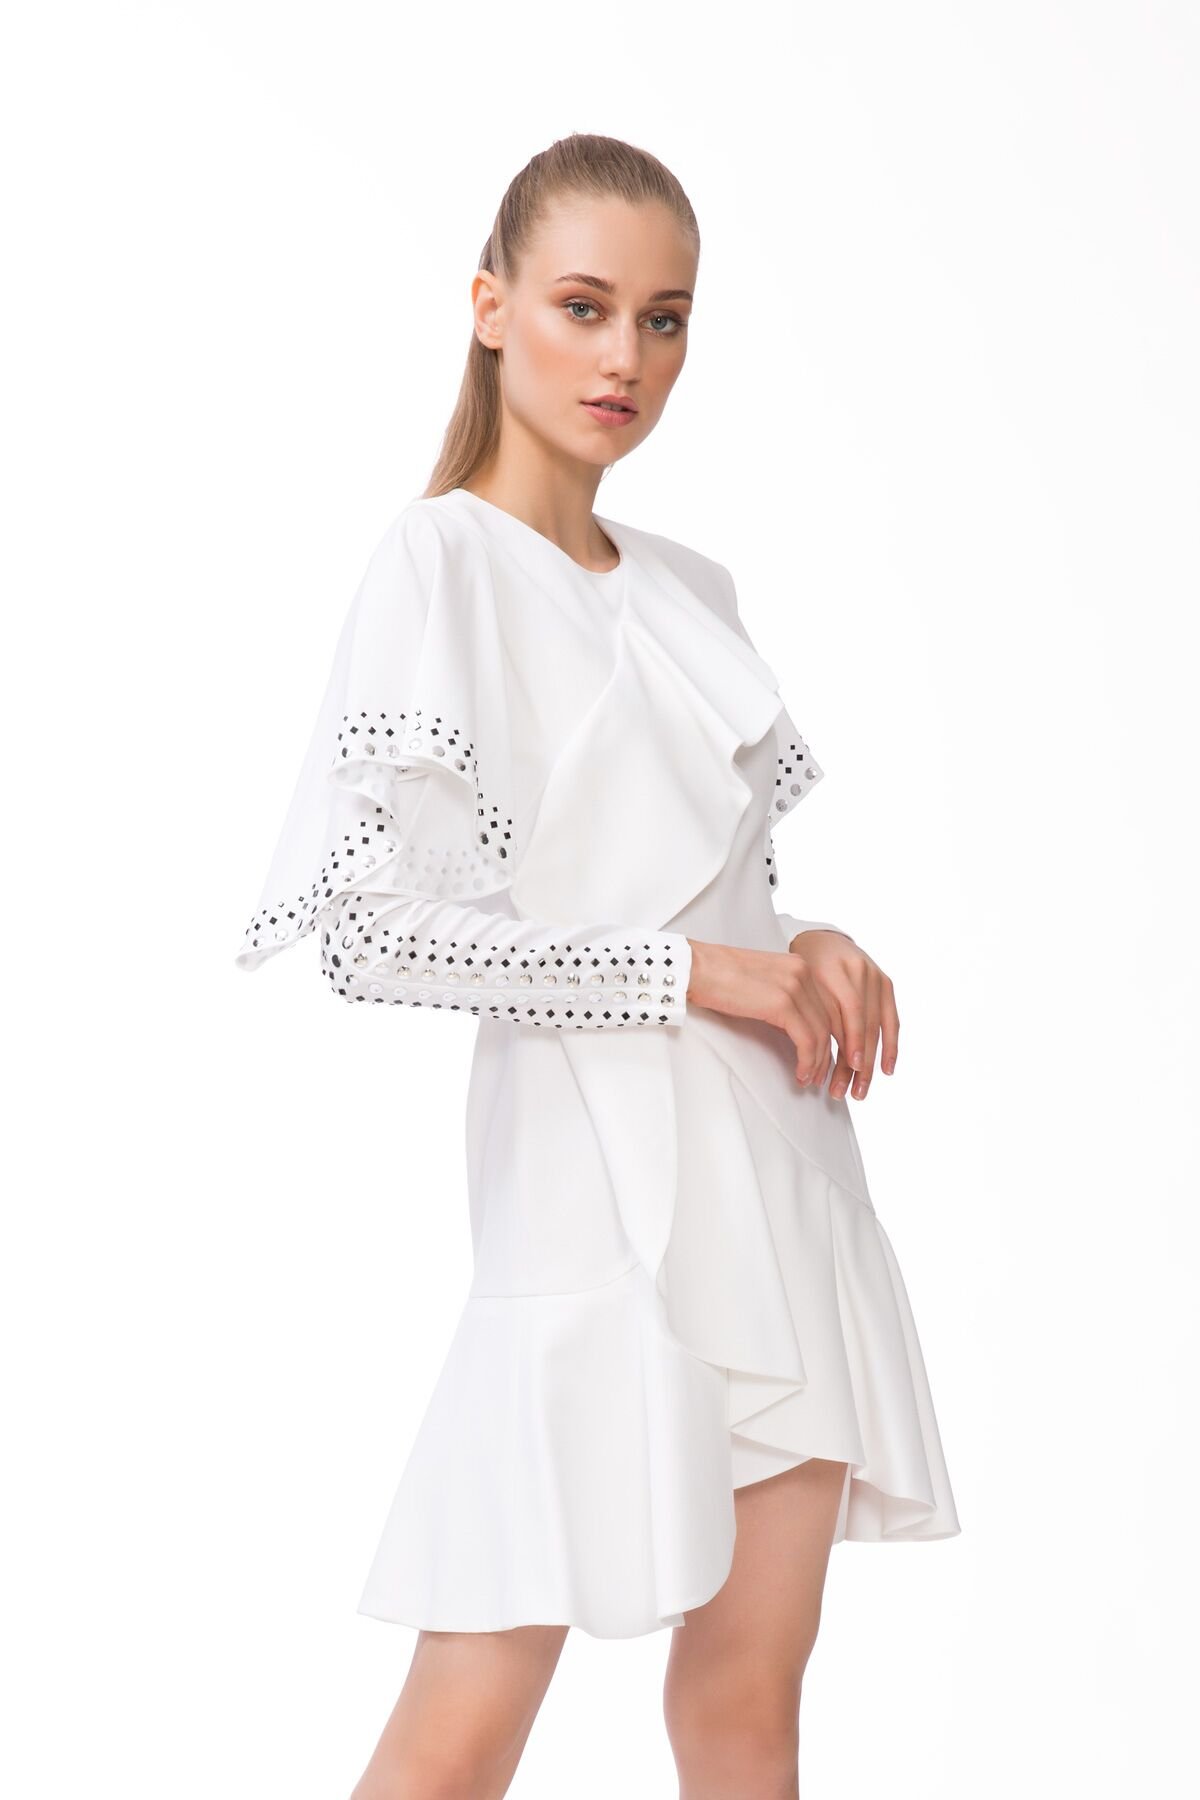 Kol Kısmı Trok Baskı Detaylı Beyaz Mini Elbise